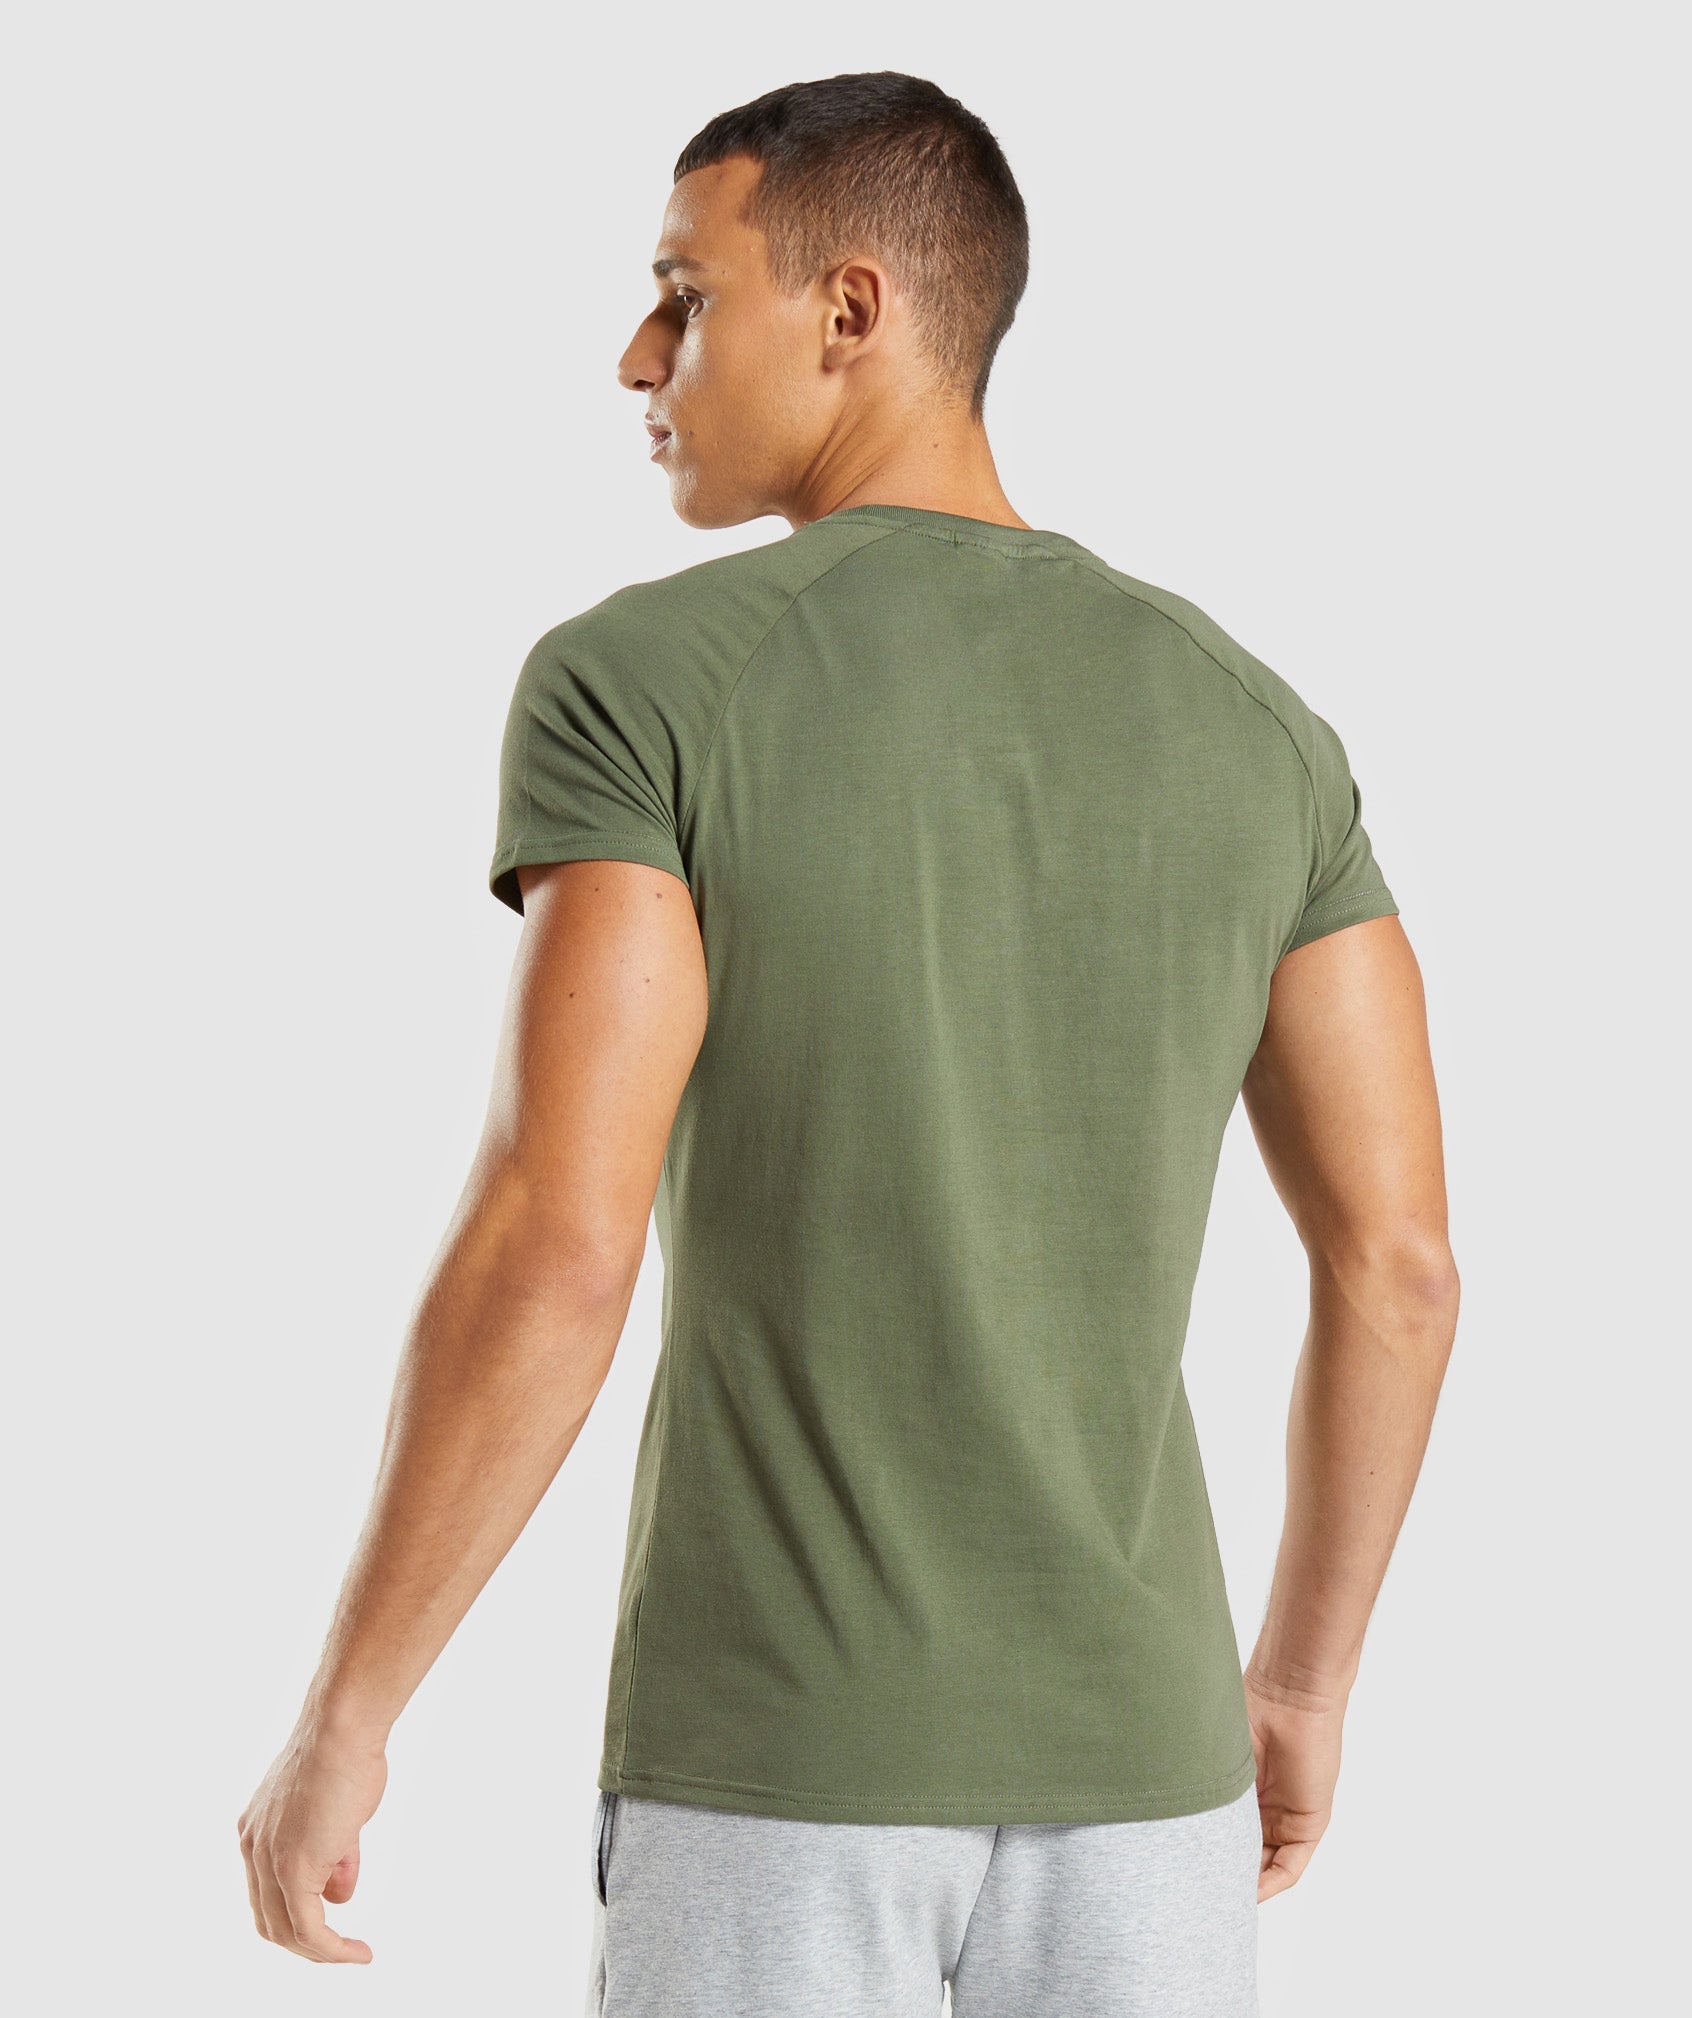 Apollo T-Shirt in Core Olive